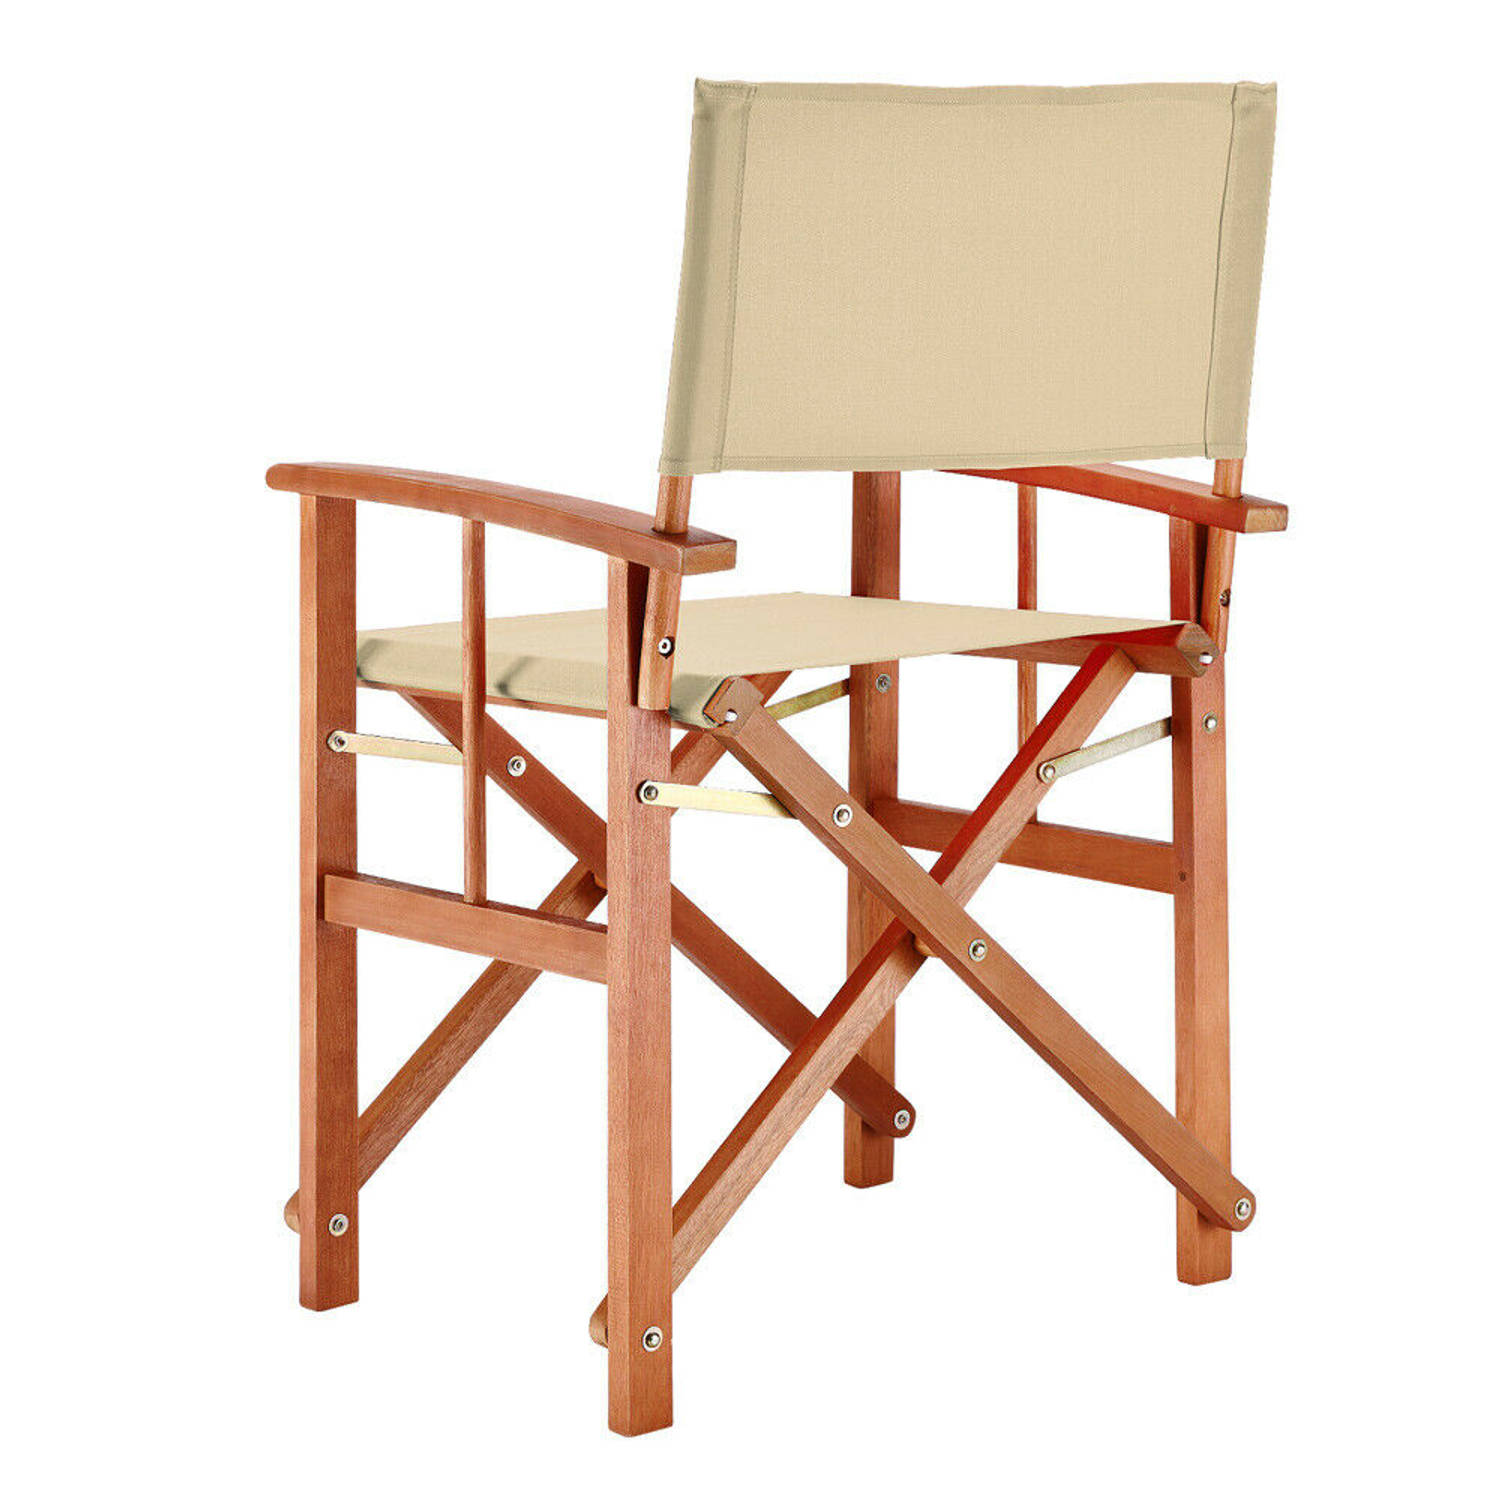 Regisseursstoel, set klapstoel, vouwstoel, creme, duurzaam, eucalyptushout, waterafstotend stof, klapstoel | Blokker